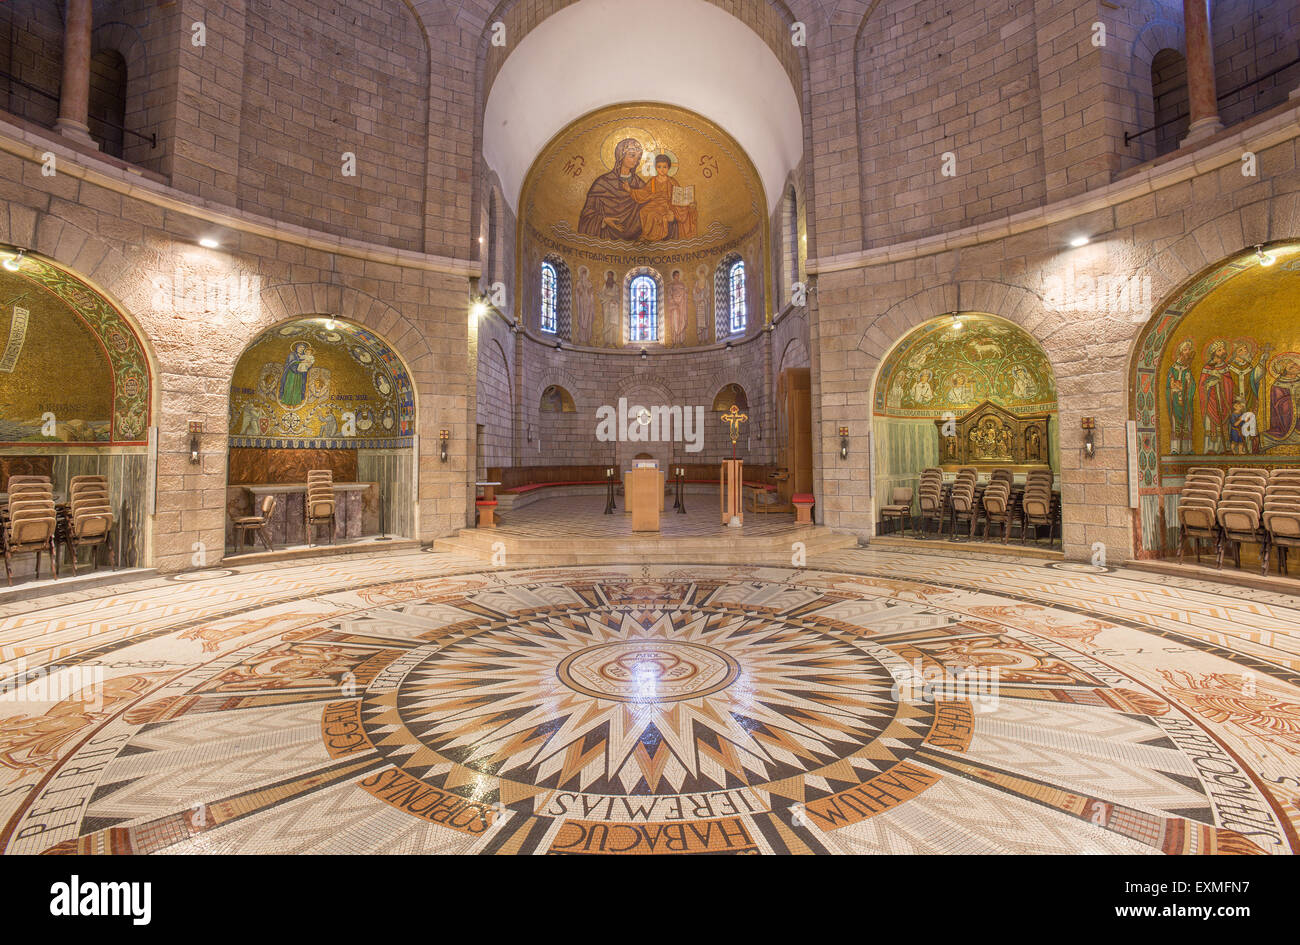 Gerusalemme, Israele - 3 Marzo 2015: la navata principale della Dormition Abbey con il pavimento in mosaico concepito e realizzato da Maurizio Foto Stock